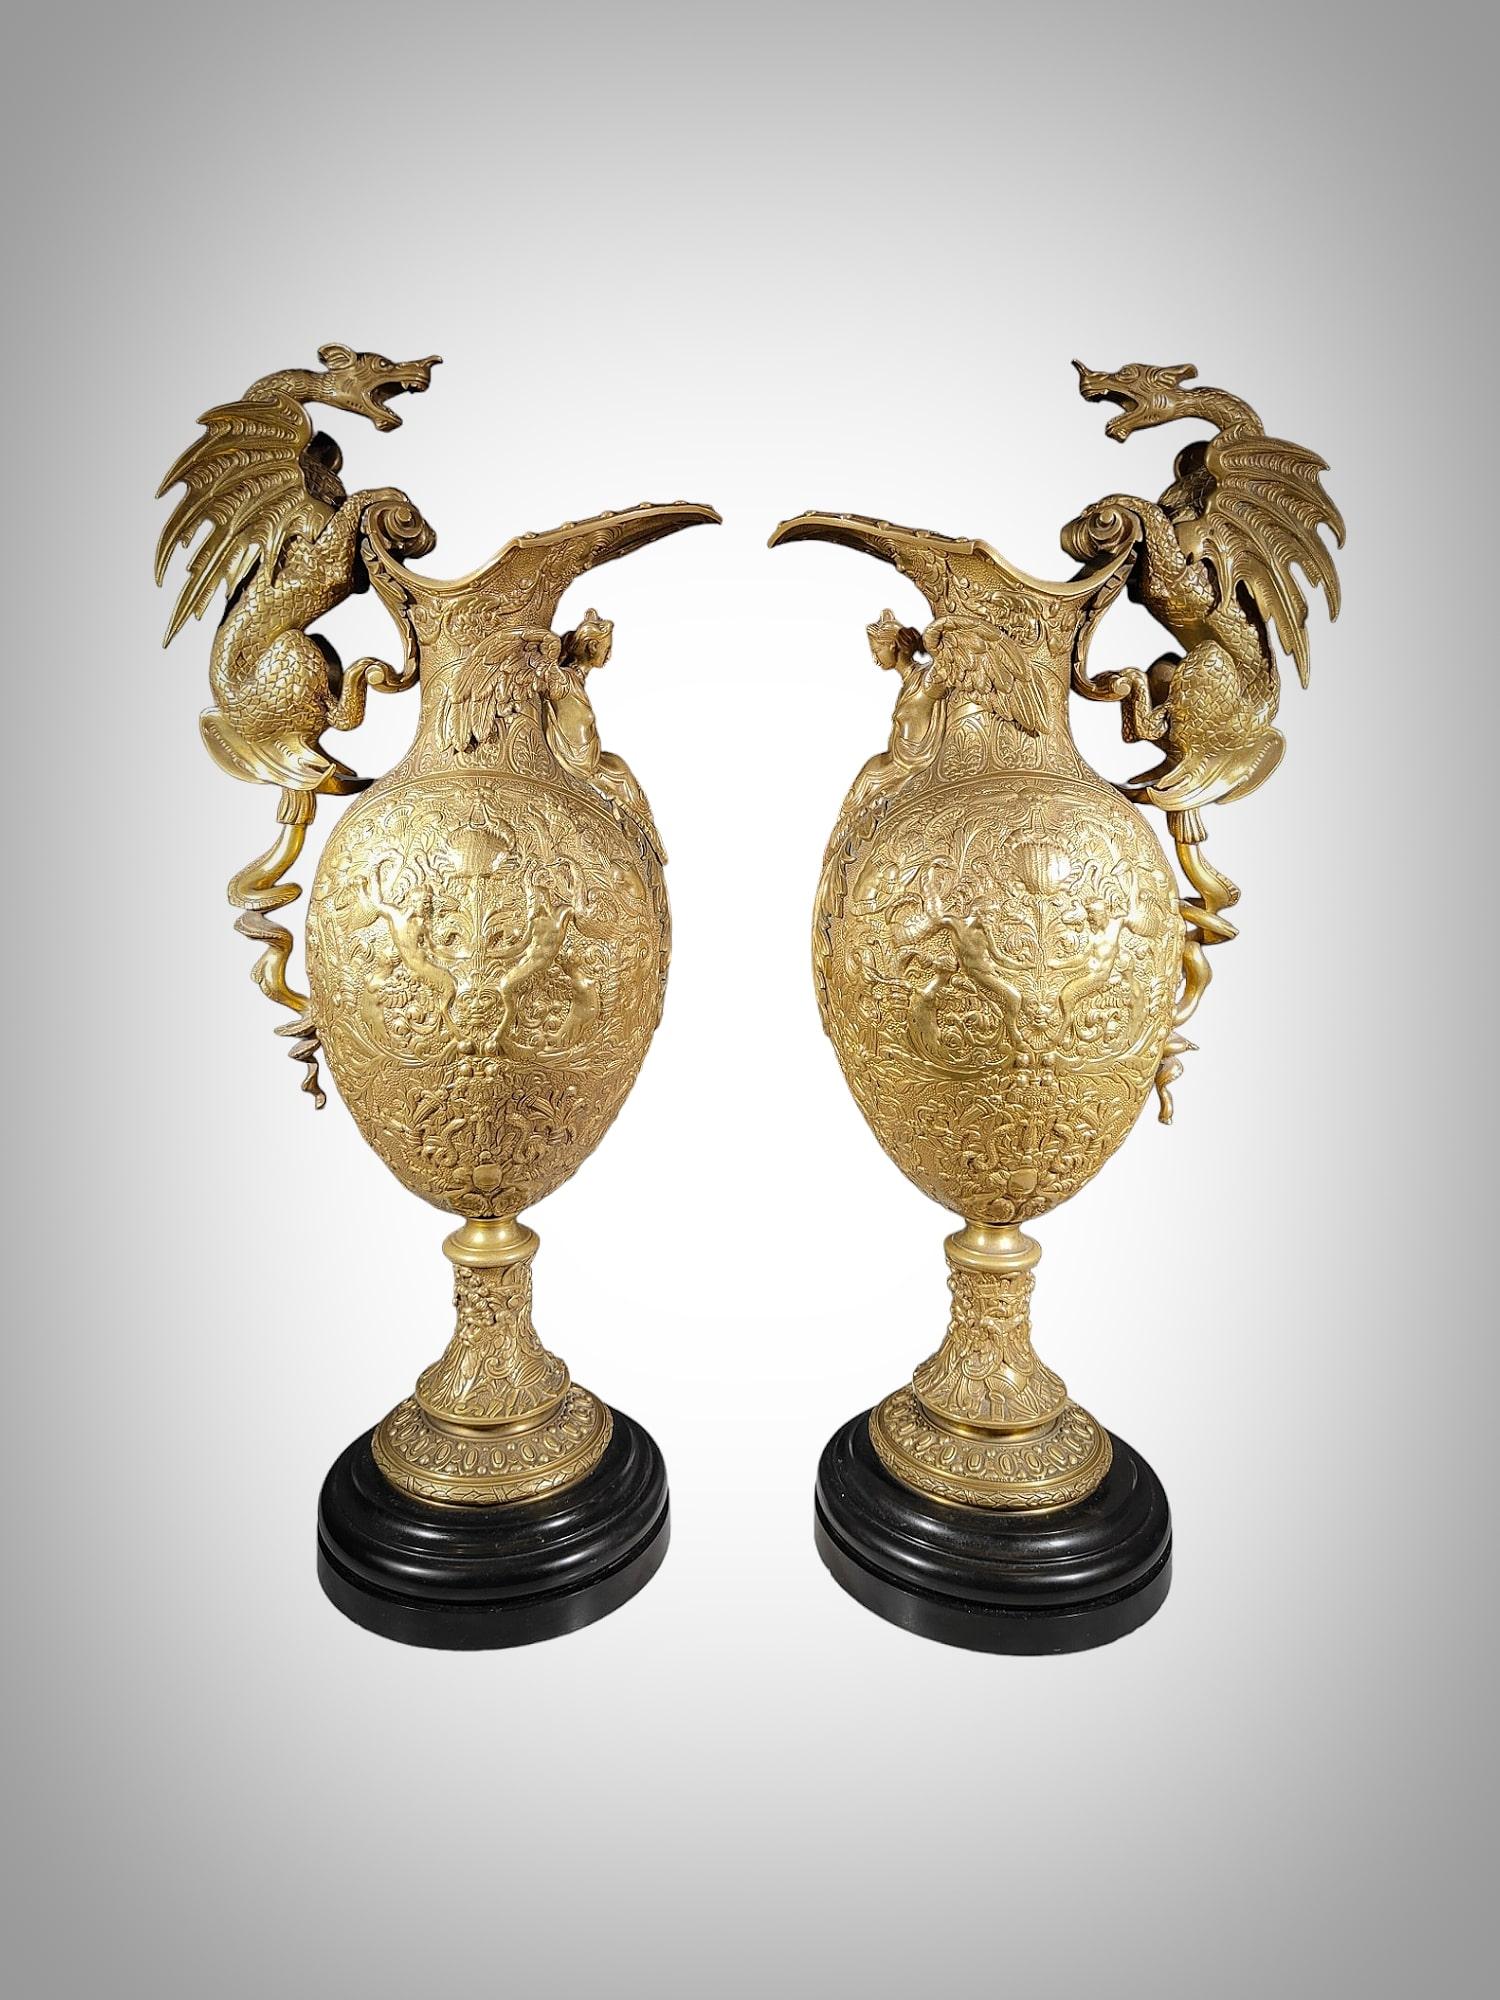 Verschönern Sie Ihren Wohnbereich mit diesem exquisiten Paar großer Bronzevasen, die die tadellose Handwerkskunst des 19. Diese beeindruckenden Vasen sind mit aufwändigen Reliefs mit Renaissancemotiven versehen, und ihre drachenförmigen Henkel